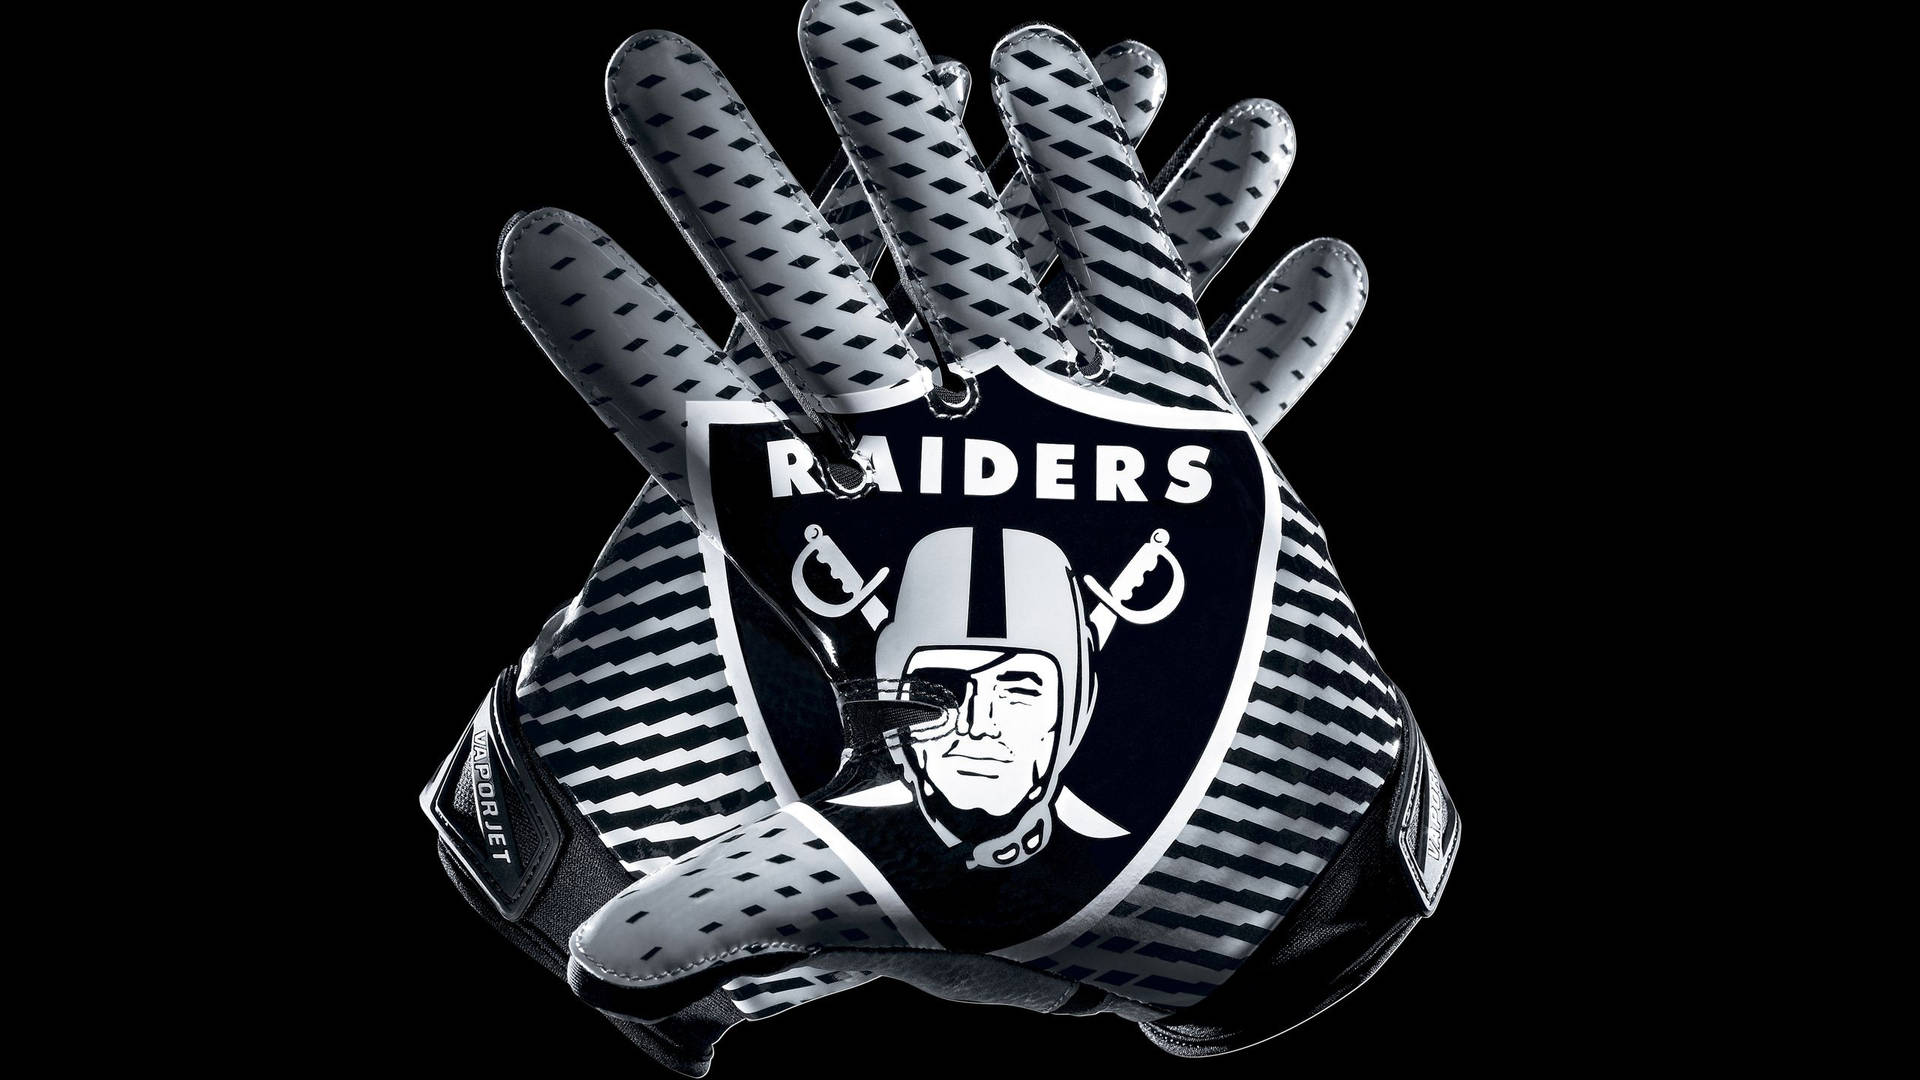 Raider's Player Gloves